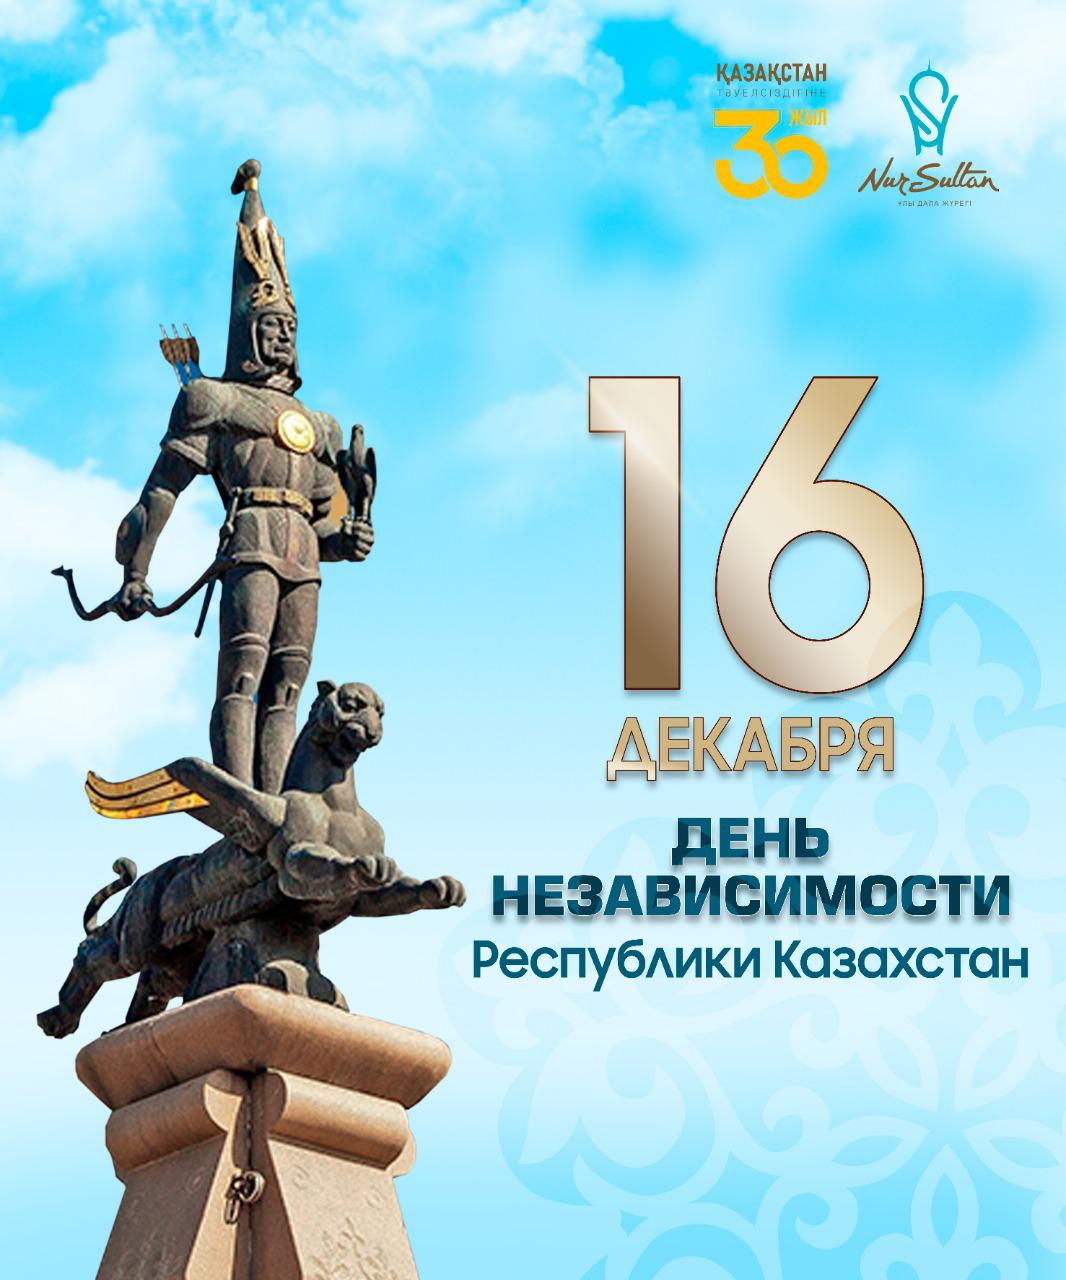 Примите искренние поздравления с Днем Независимости Республики Казахстан!